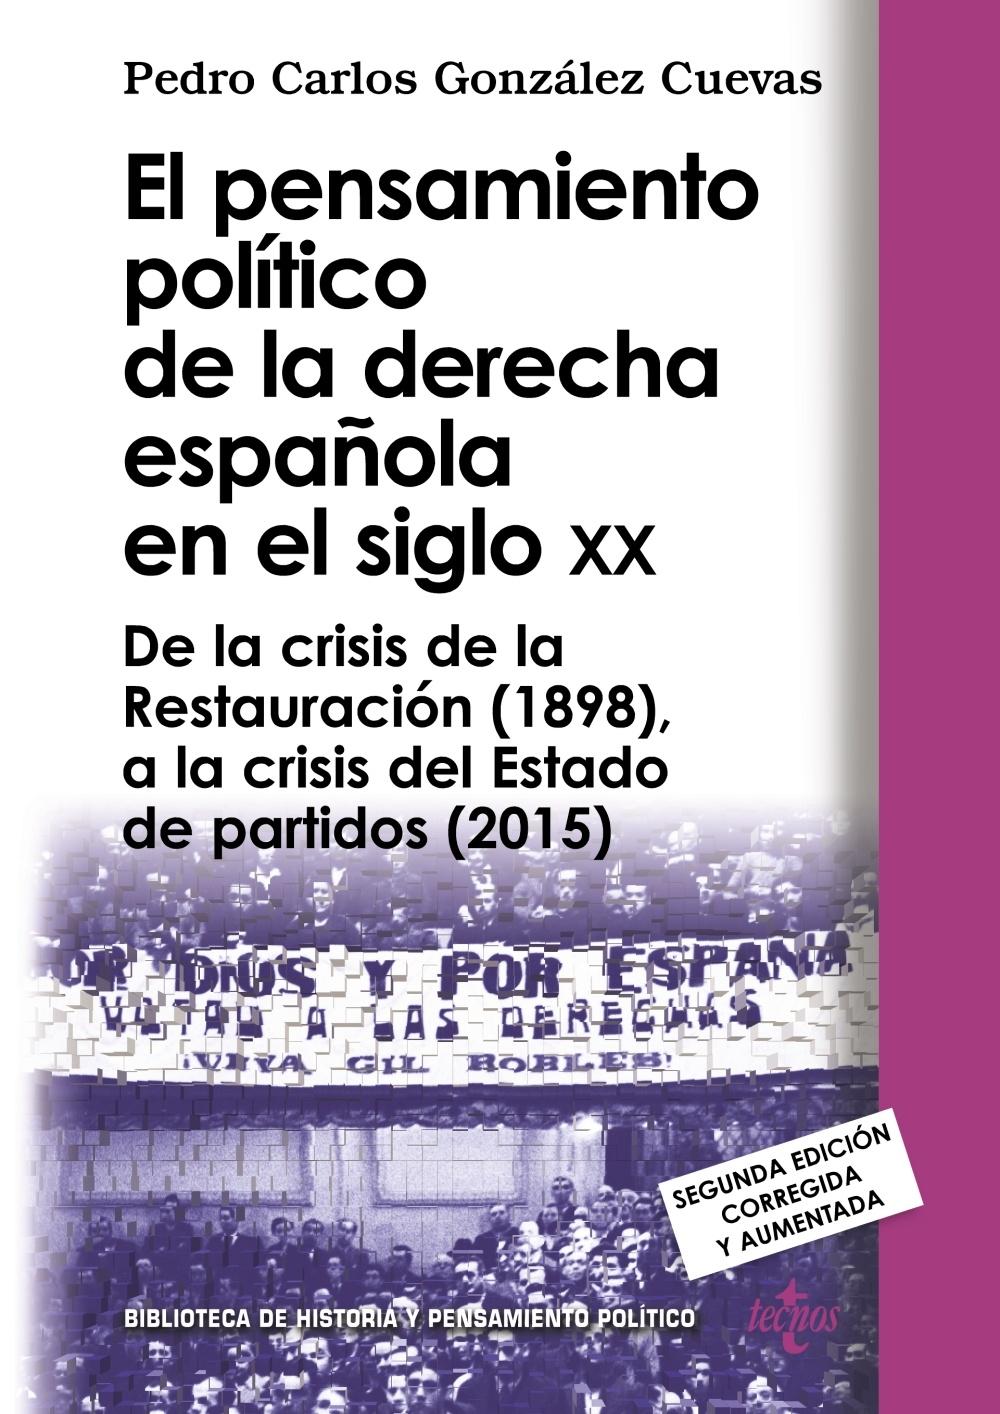 El pensamiento político de la derecha española en el siglo XX "De la crisis de la Restauración (1898), a la crisis del Estado de partid"